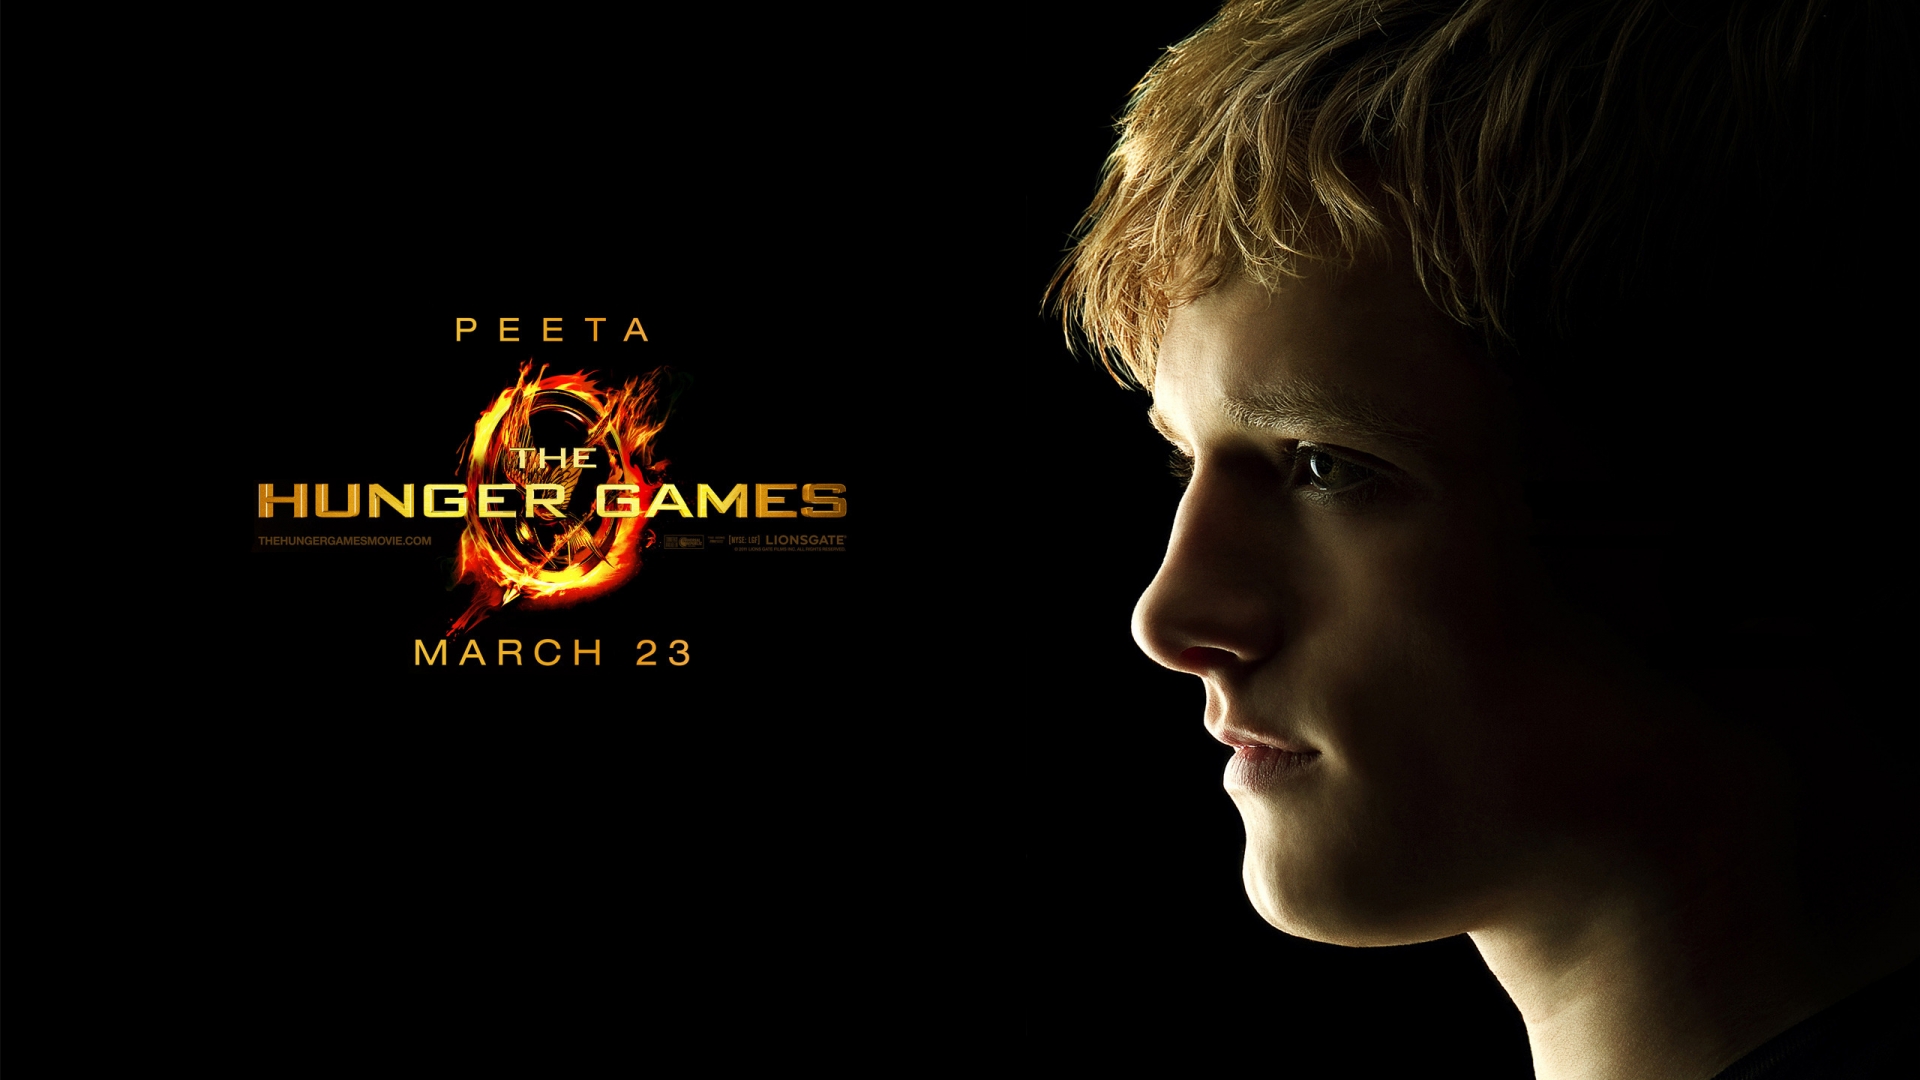 The Hunger Games Peeta for 1920 x 1080 HDTV 1080p resolution